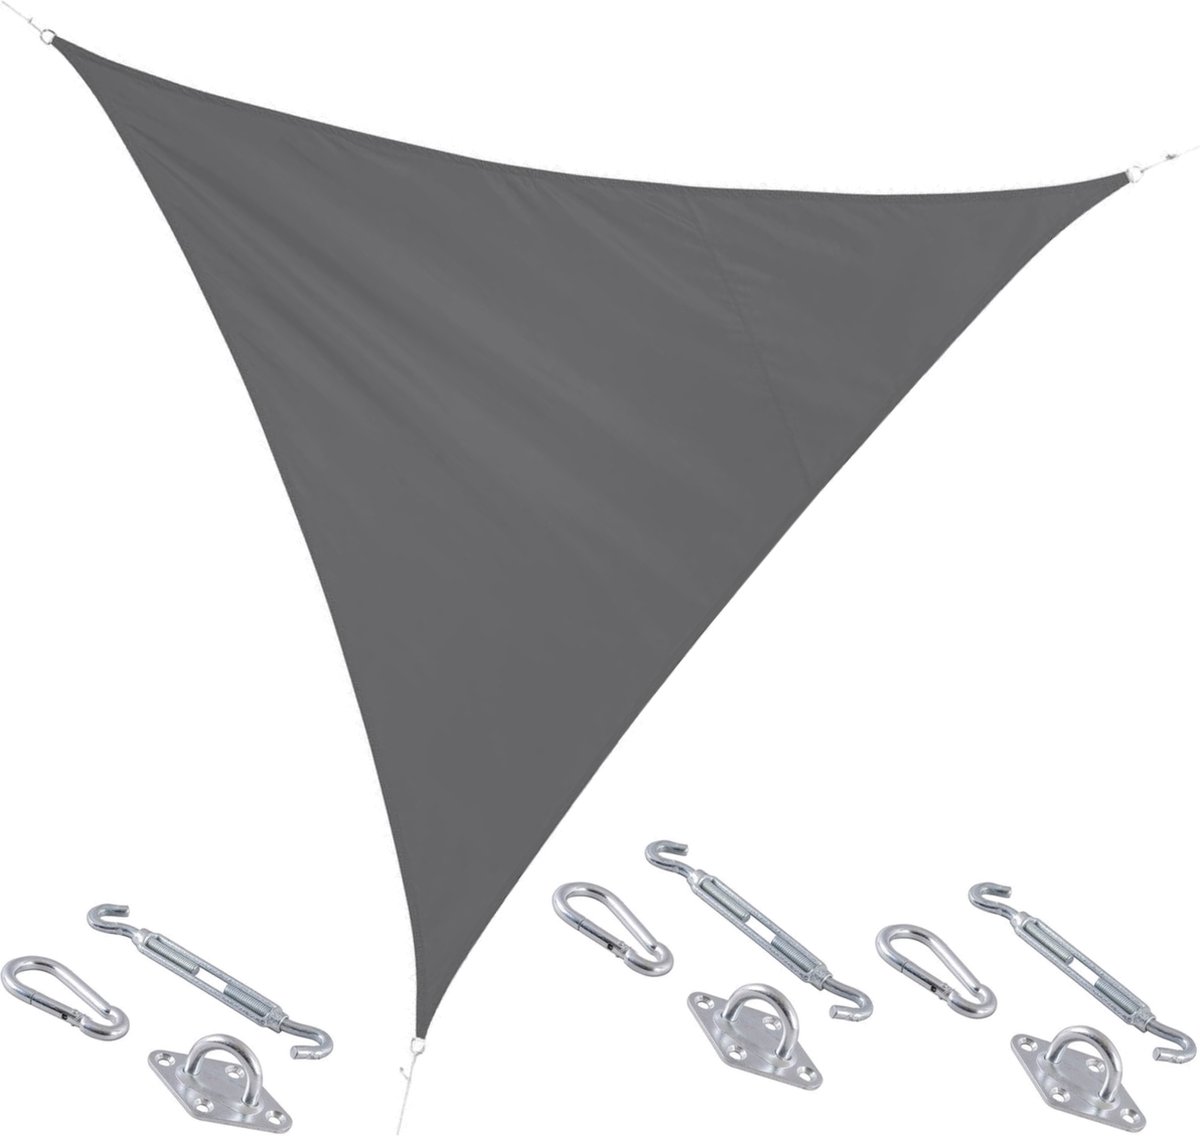 Polyester schaduwdoek/zonnescherm Curacao driehoek grijs 3 x 3 x 3 meter - inclusief bevestiging haken set